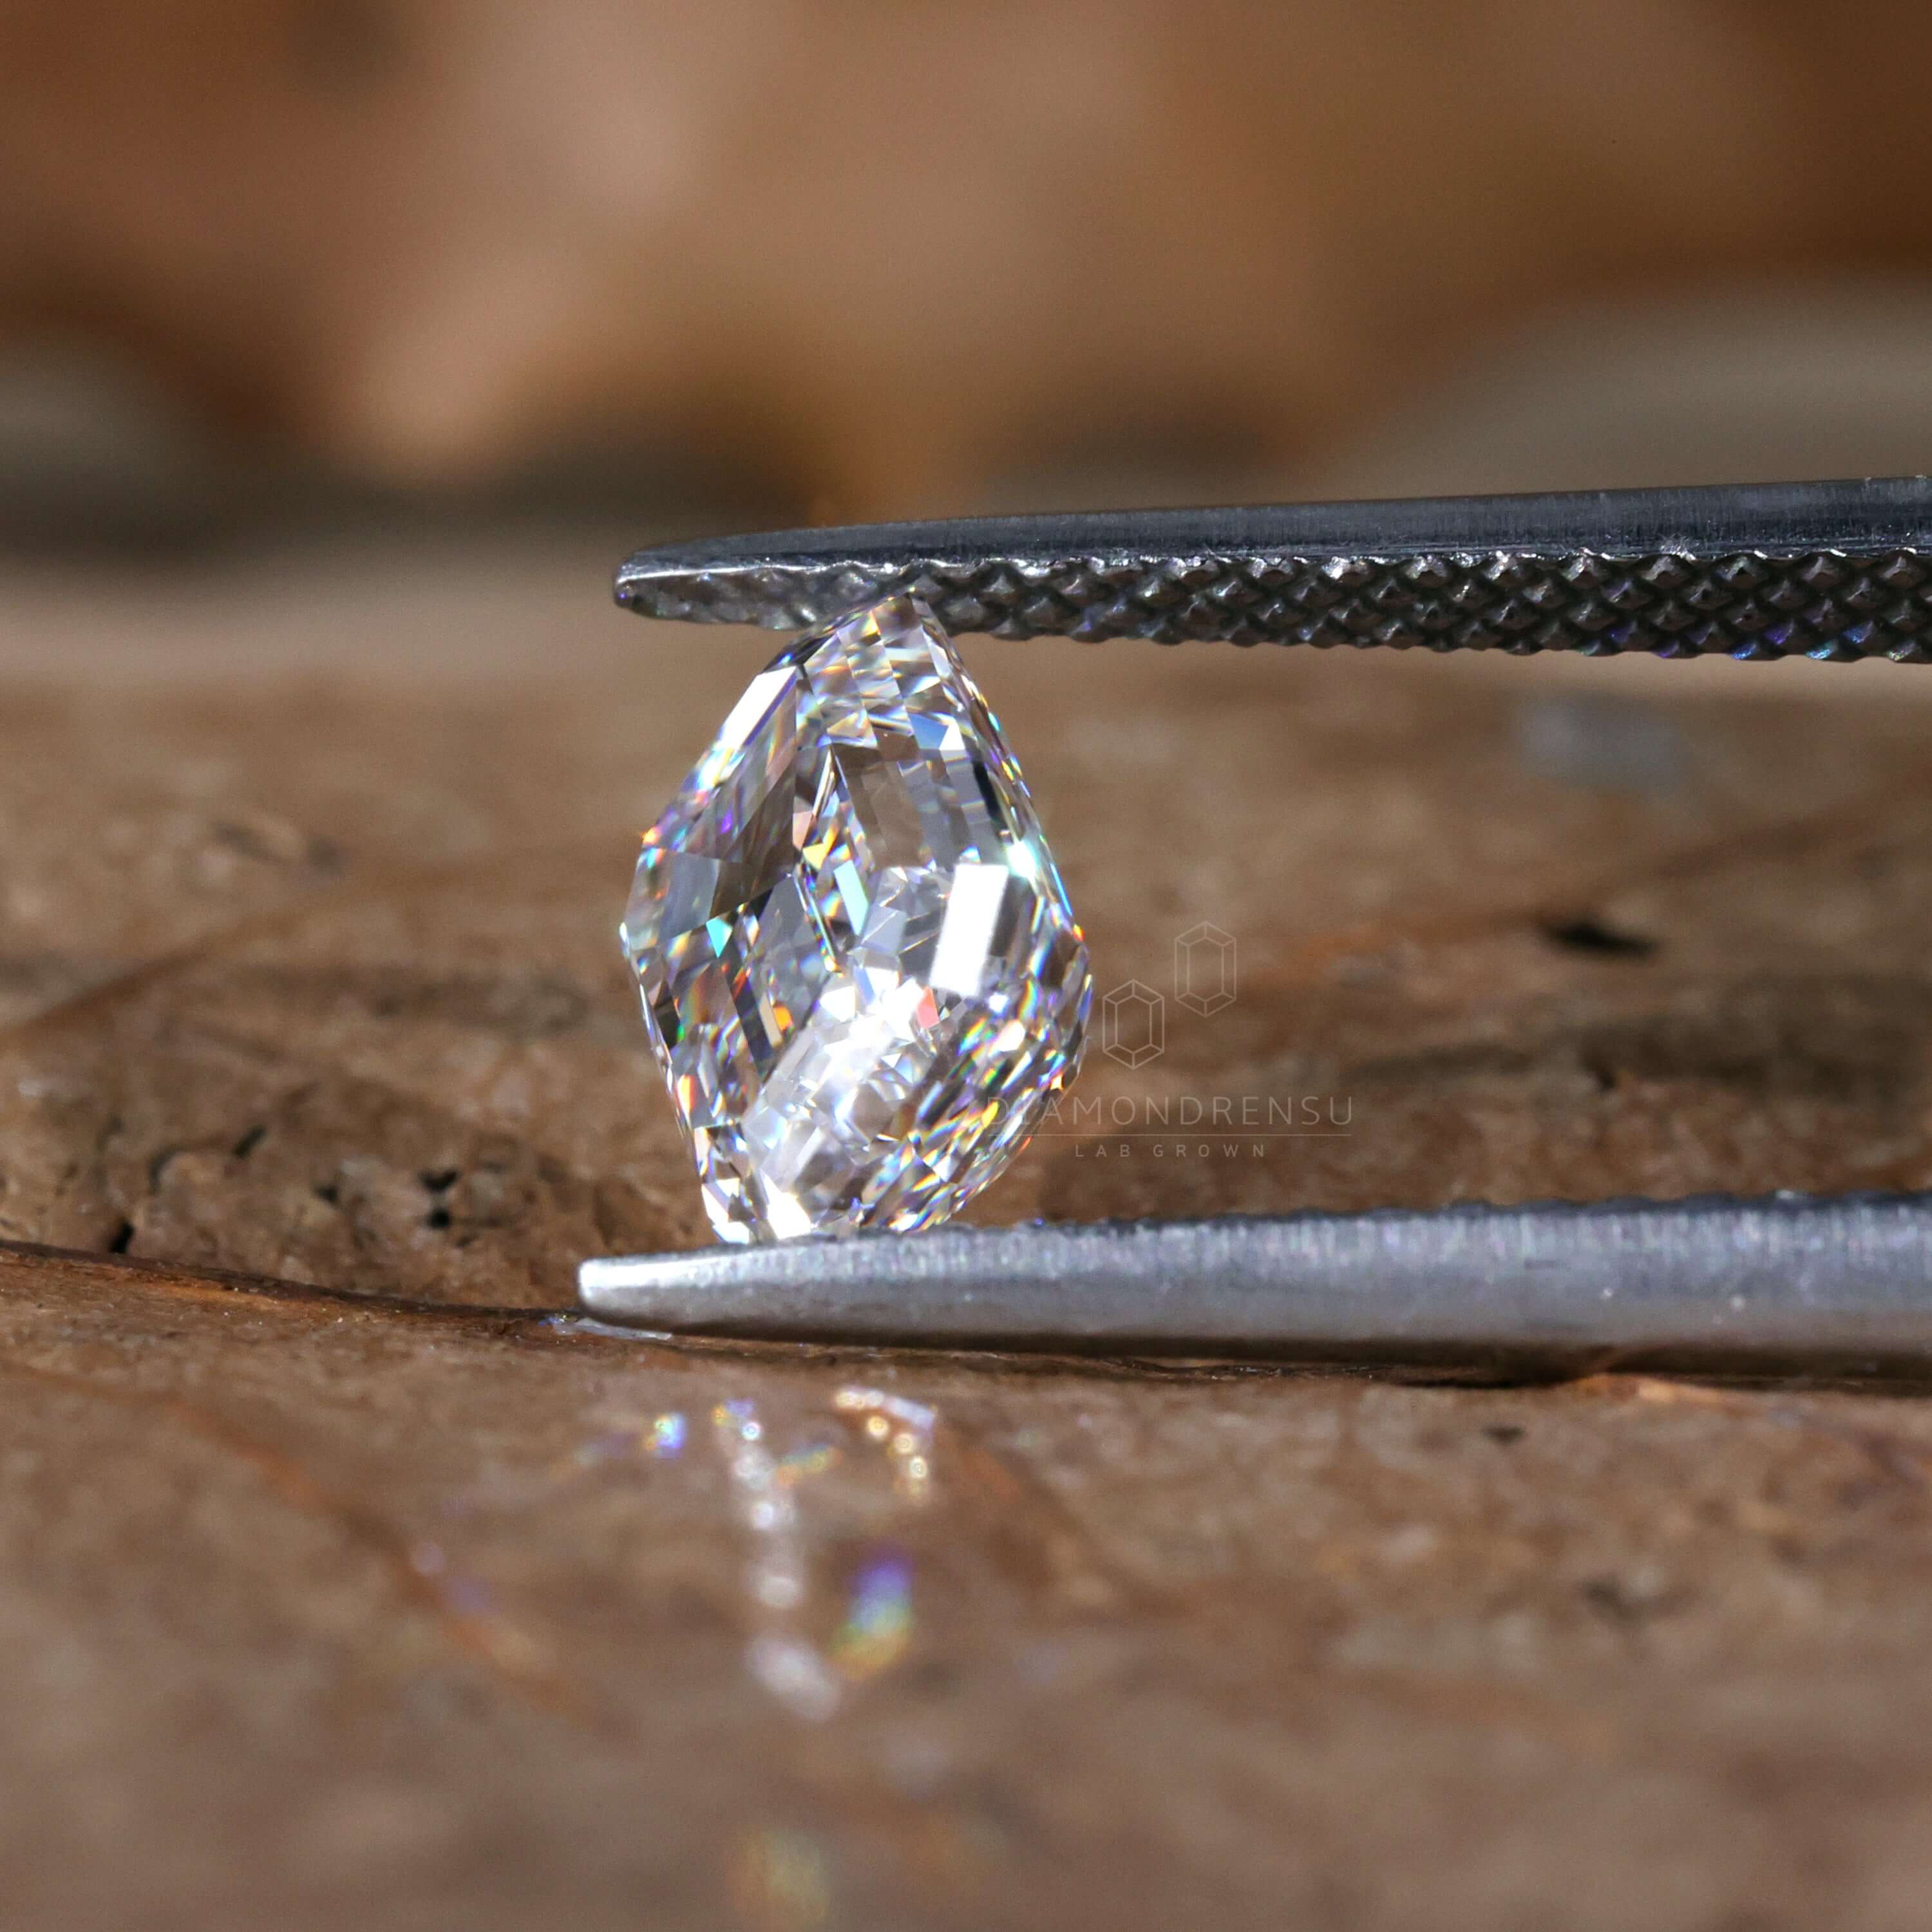 lab diamond - diamondrensu